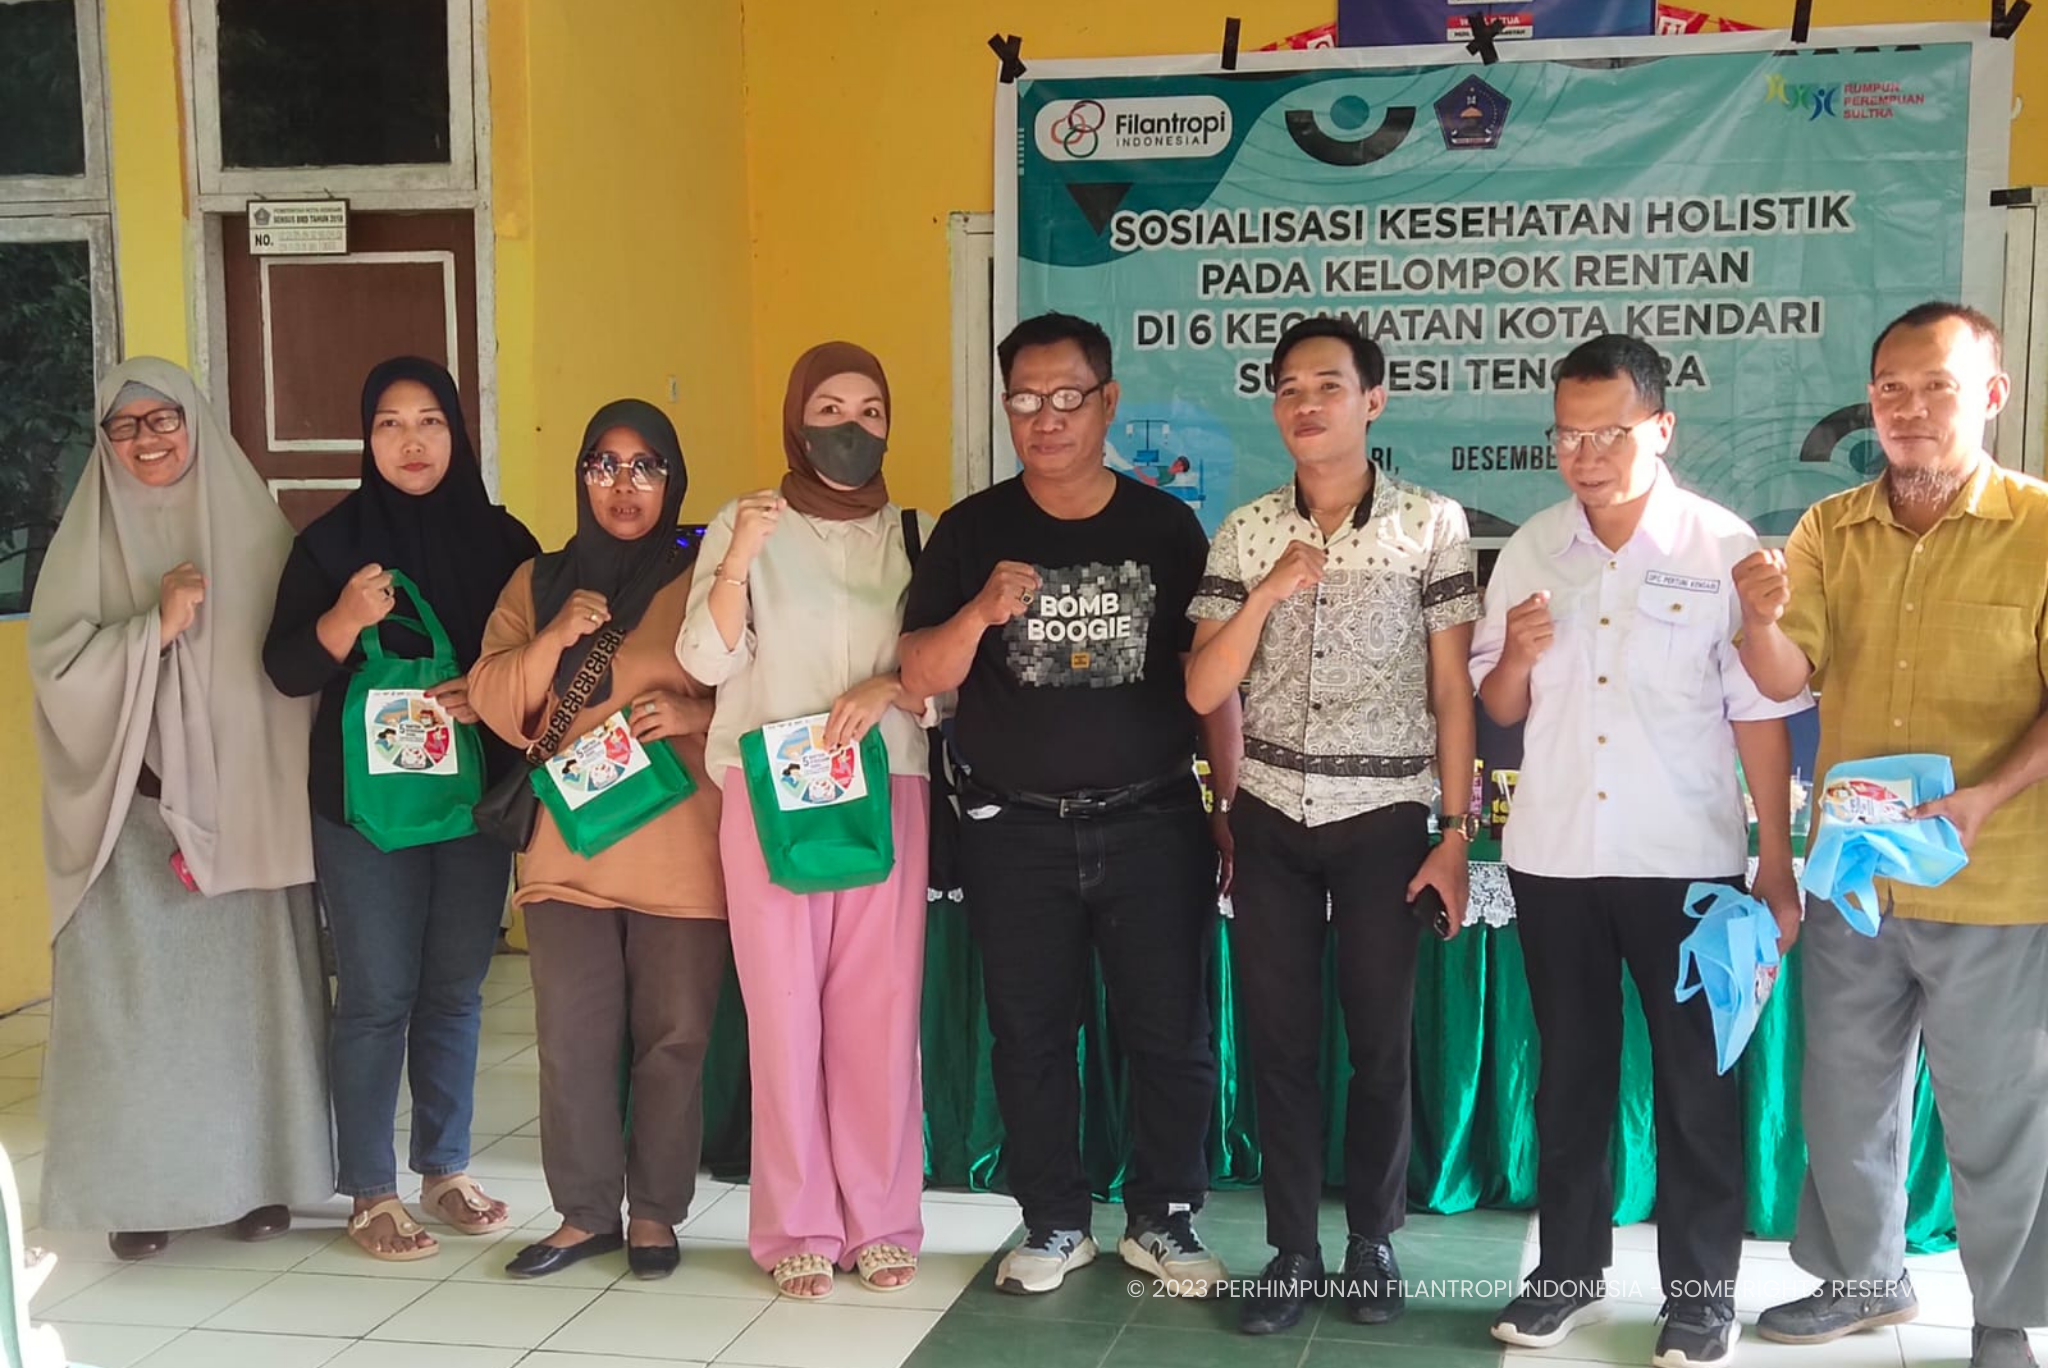 Filantropi Indonesia Gandeng Multi Stakeholder dalam Penuntasanan Vaksinasi COVID-19 dan Edukasi PHBS Bagi Masyarakat di Indonesia